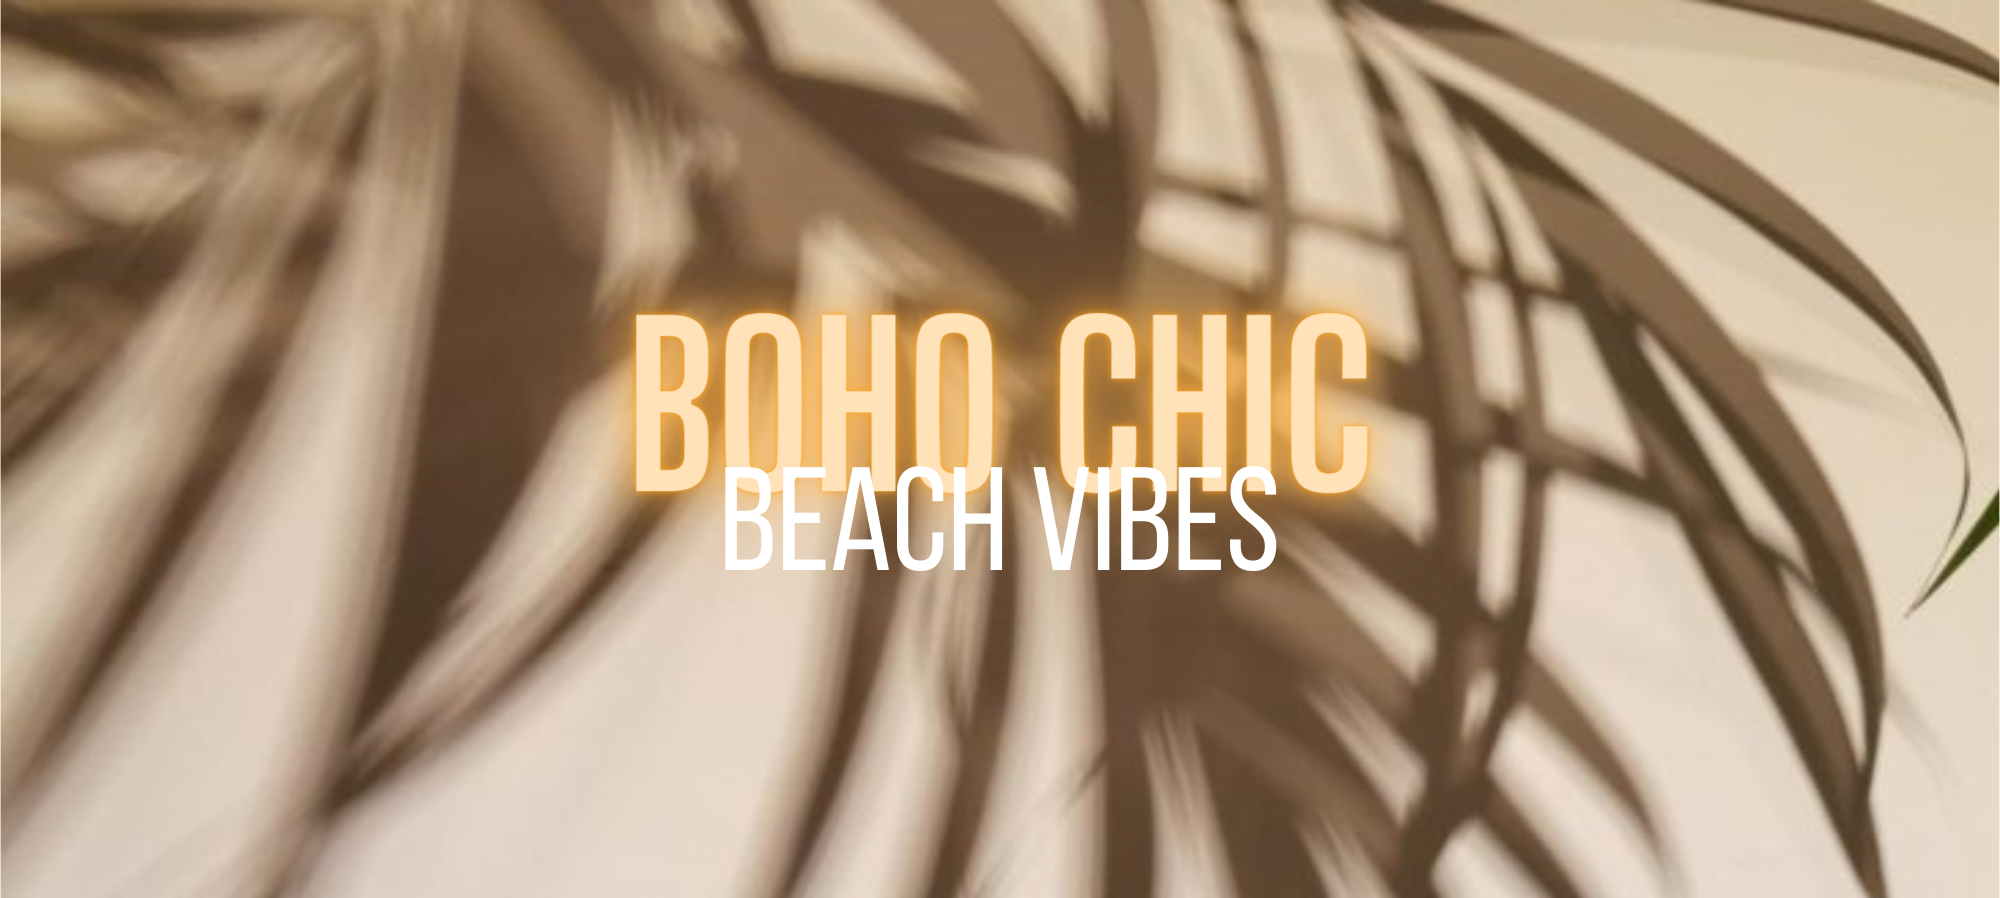 Beach vibes & boho chic met Uwantisell